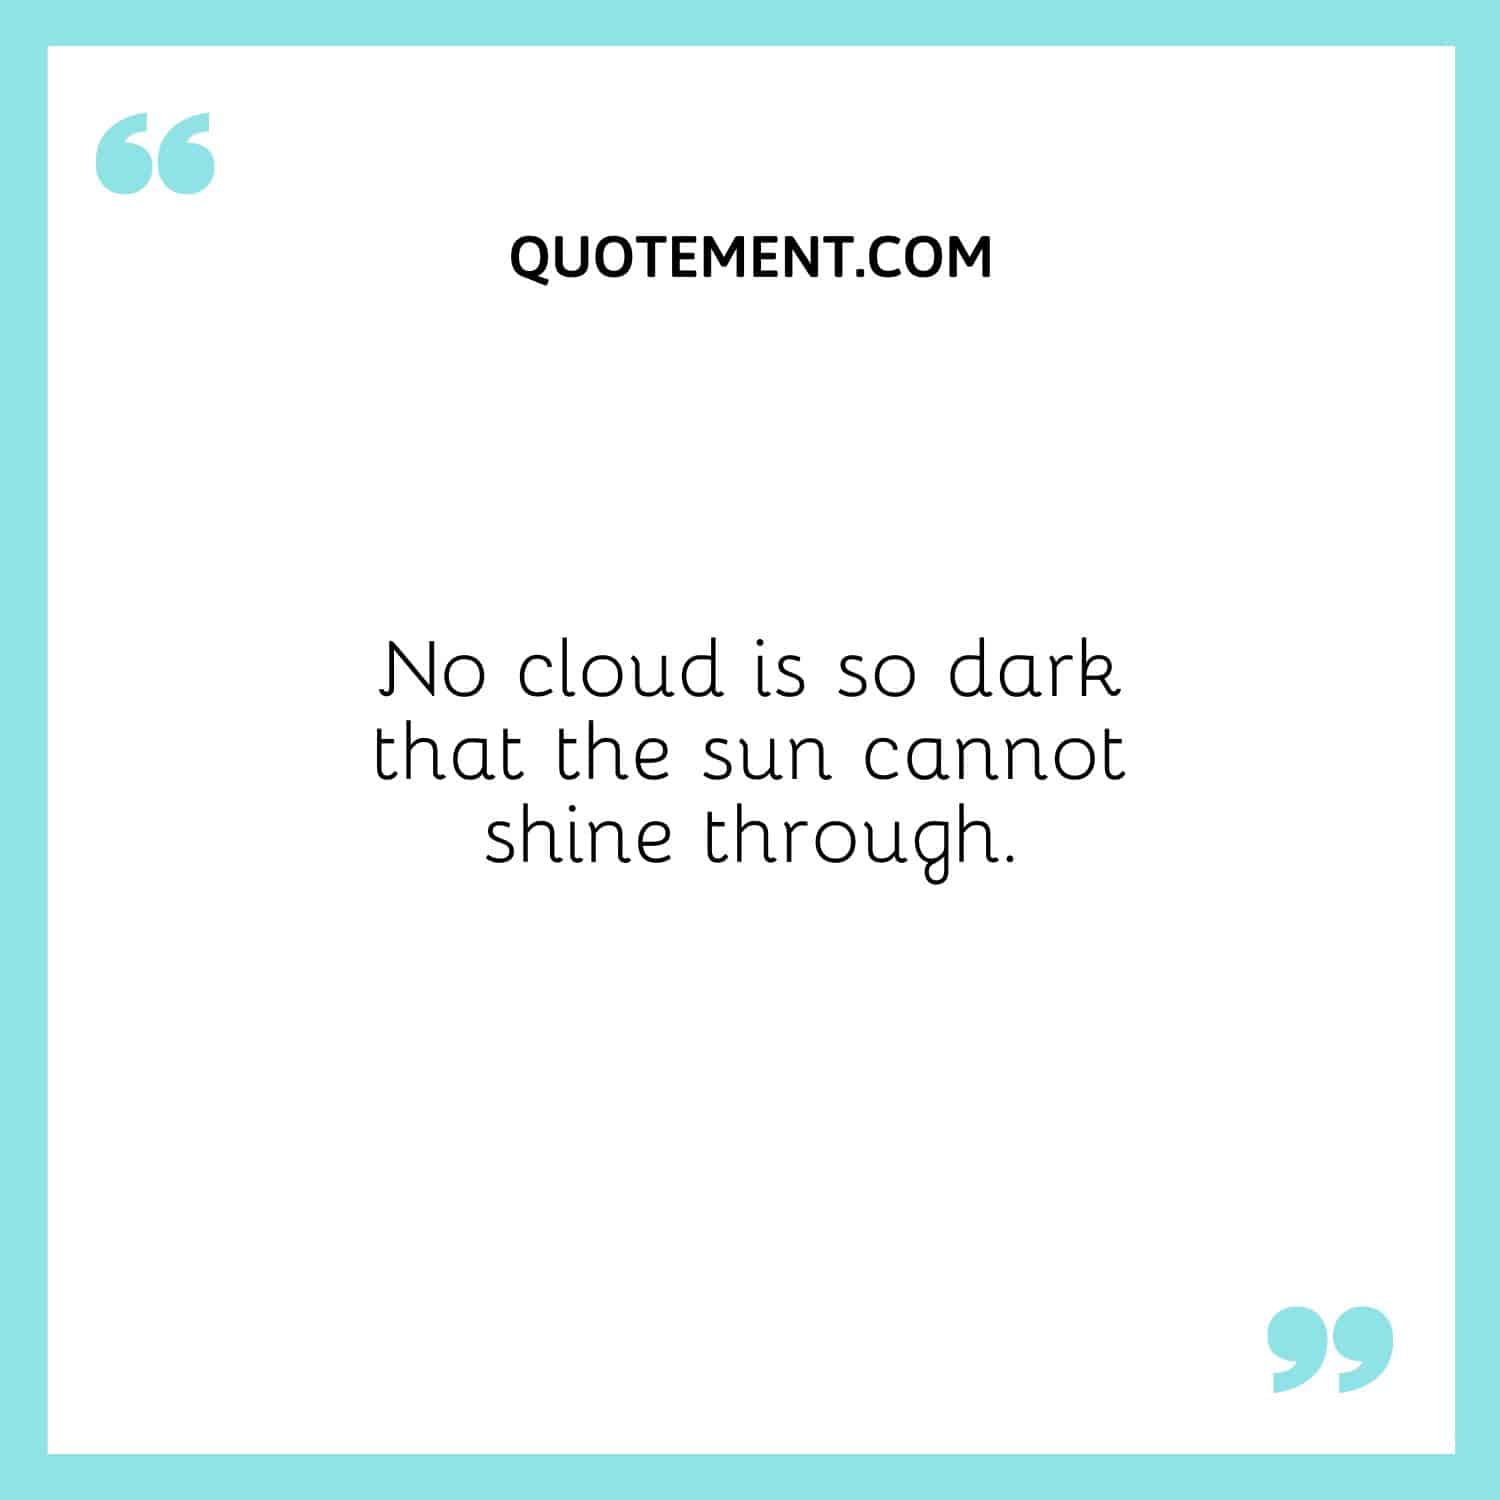 No cloud is so dark that the sun cannot shine through.